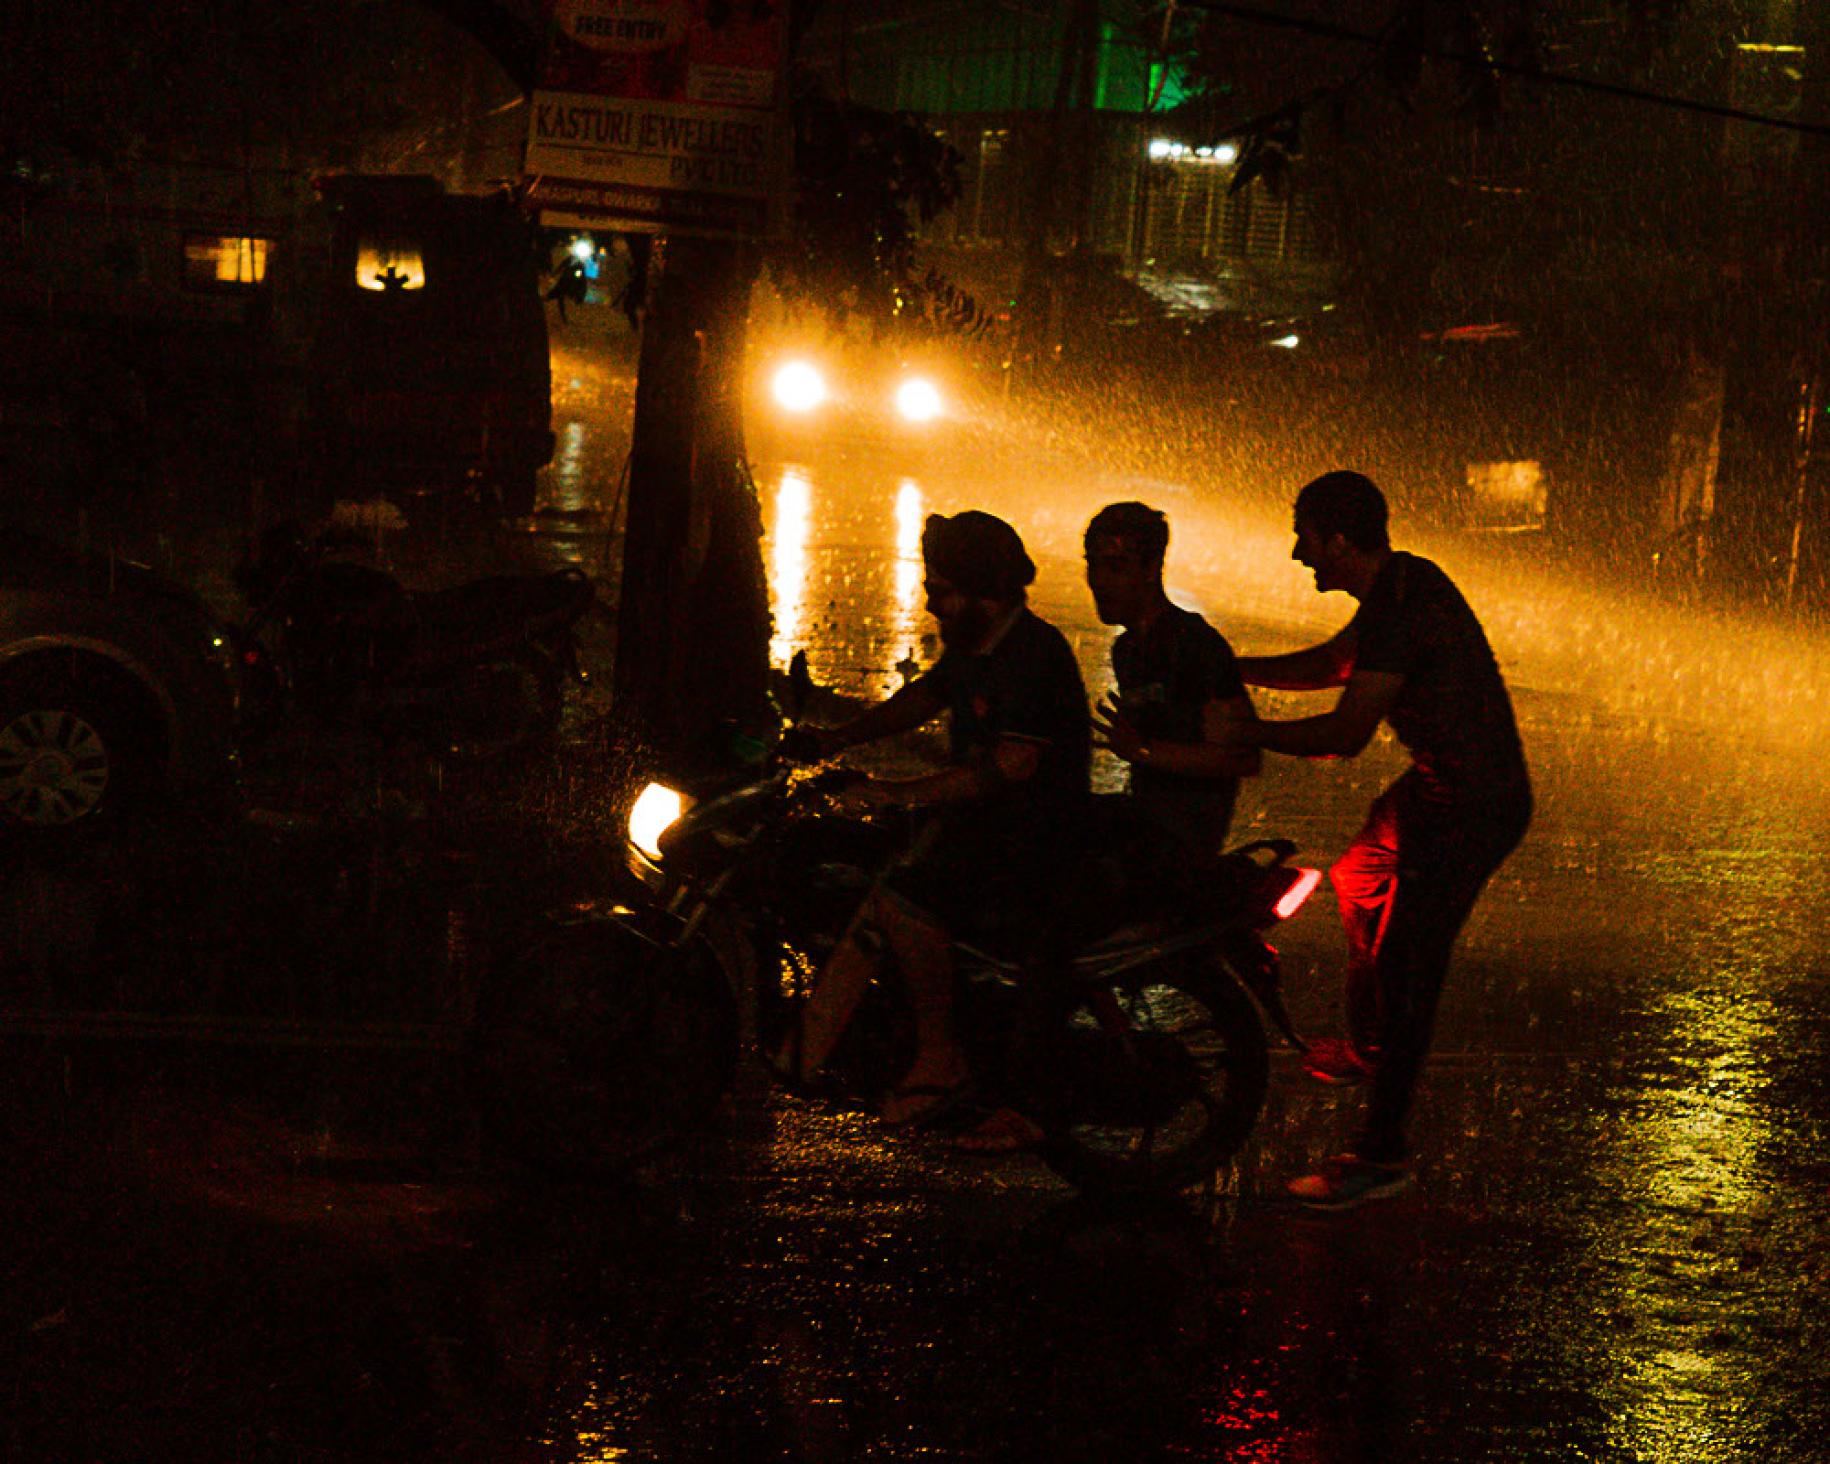 ثلاثة أشخاص يضحكون تحت المطر في الشارع ليلاً.